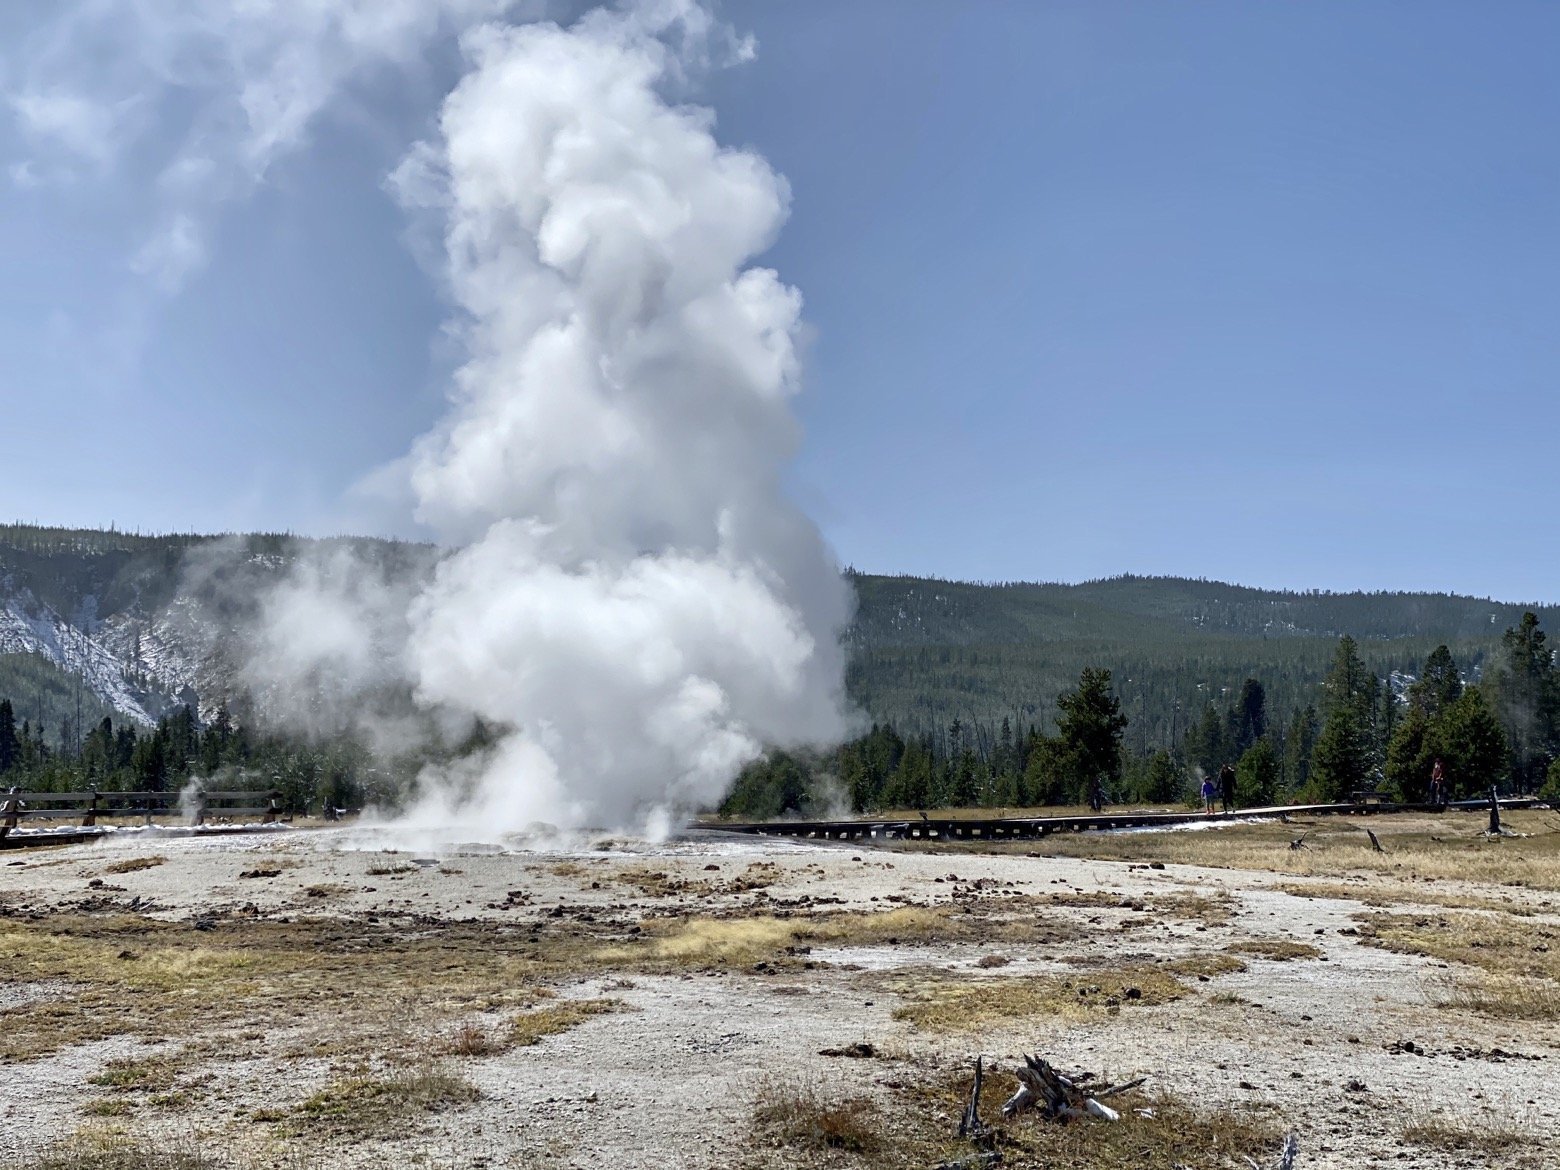 A small geyser erupting